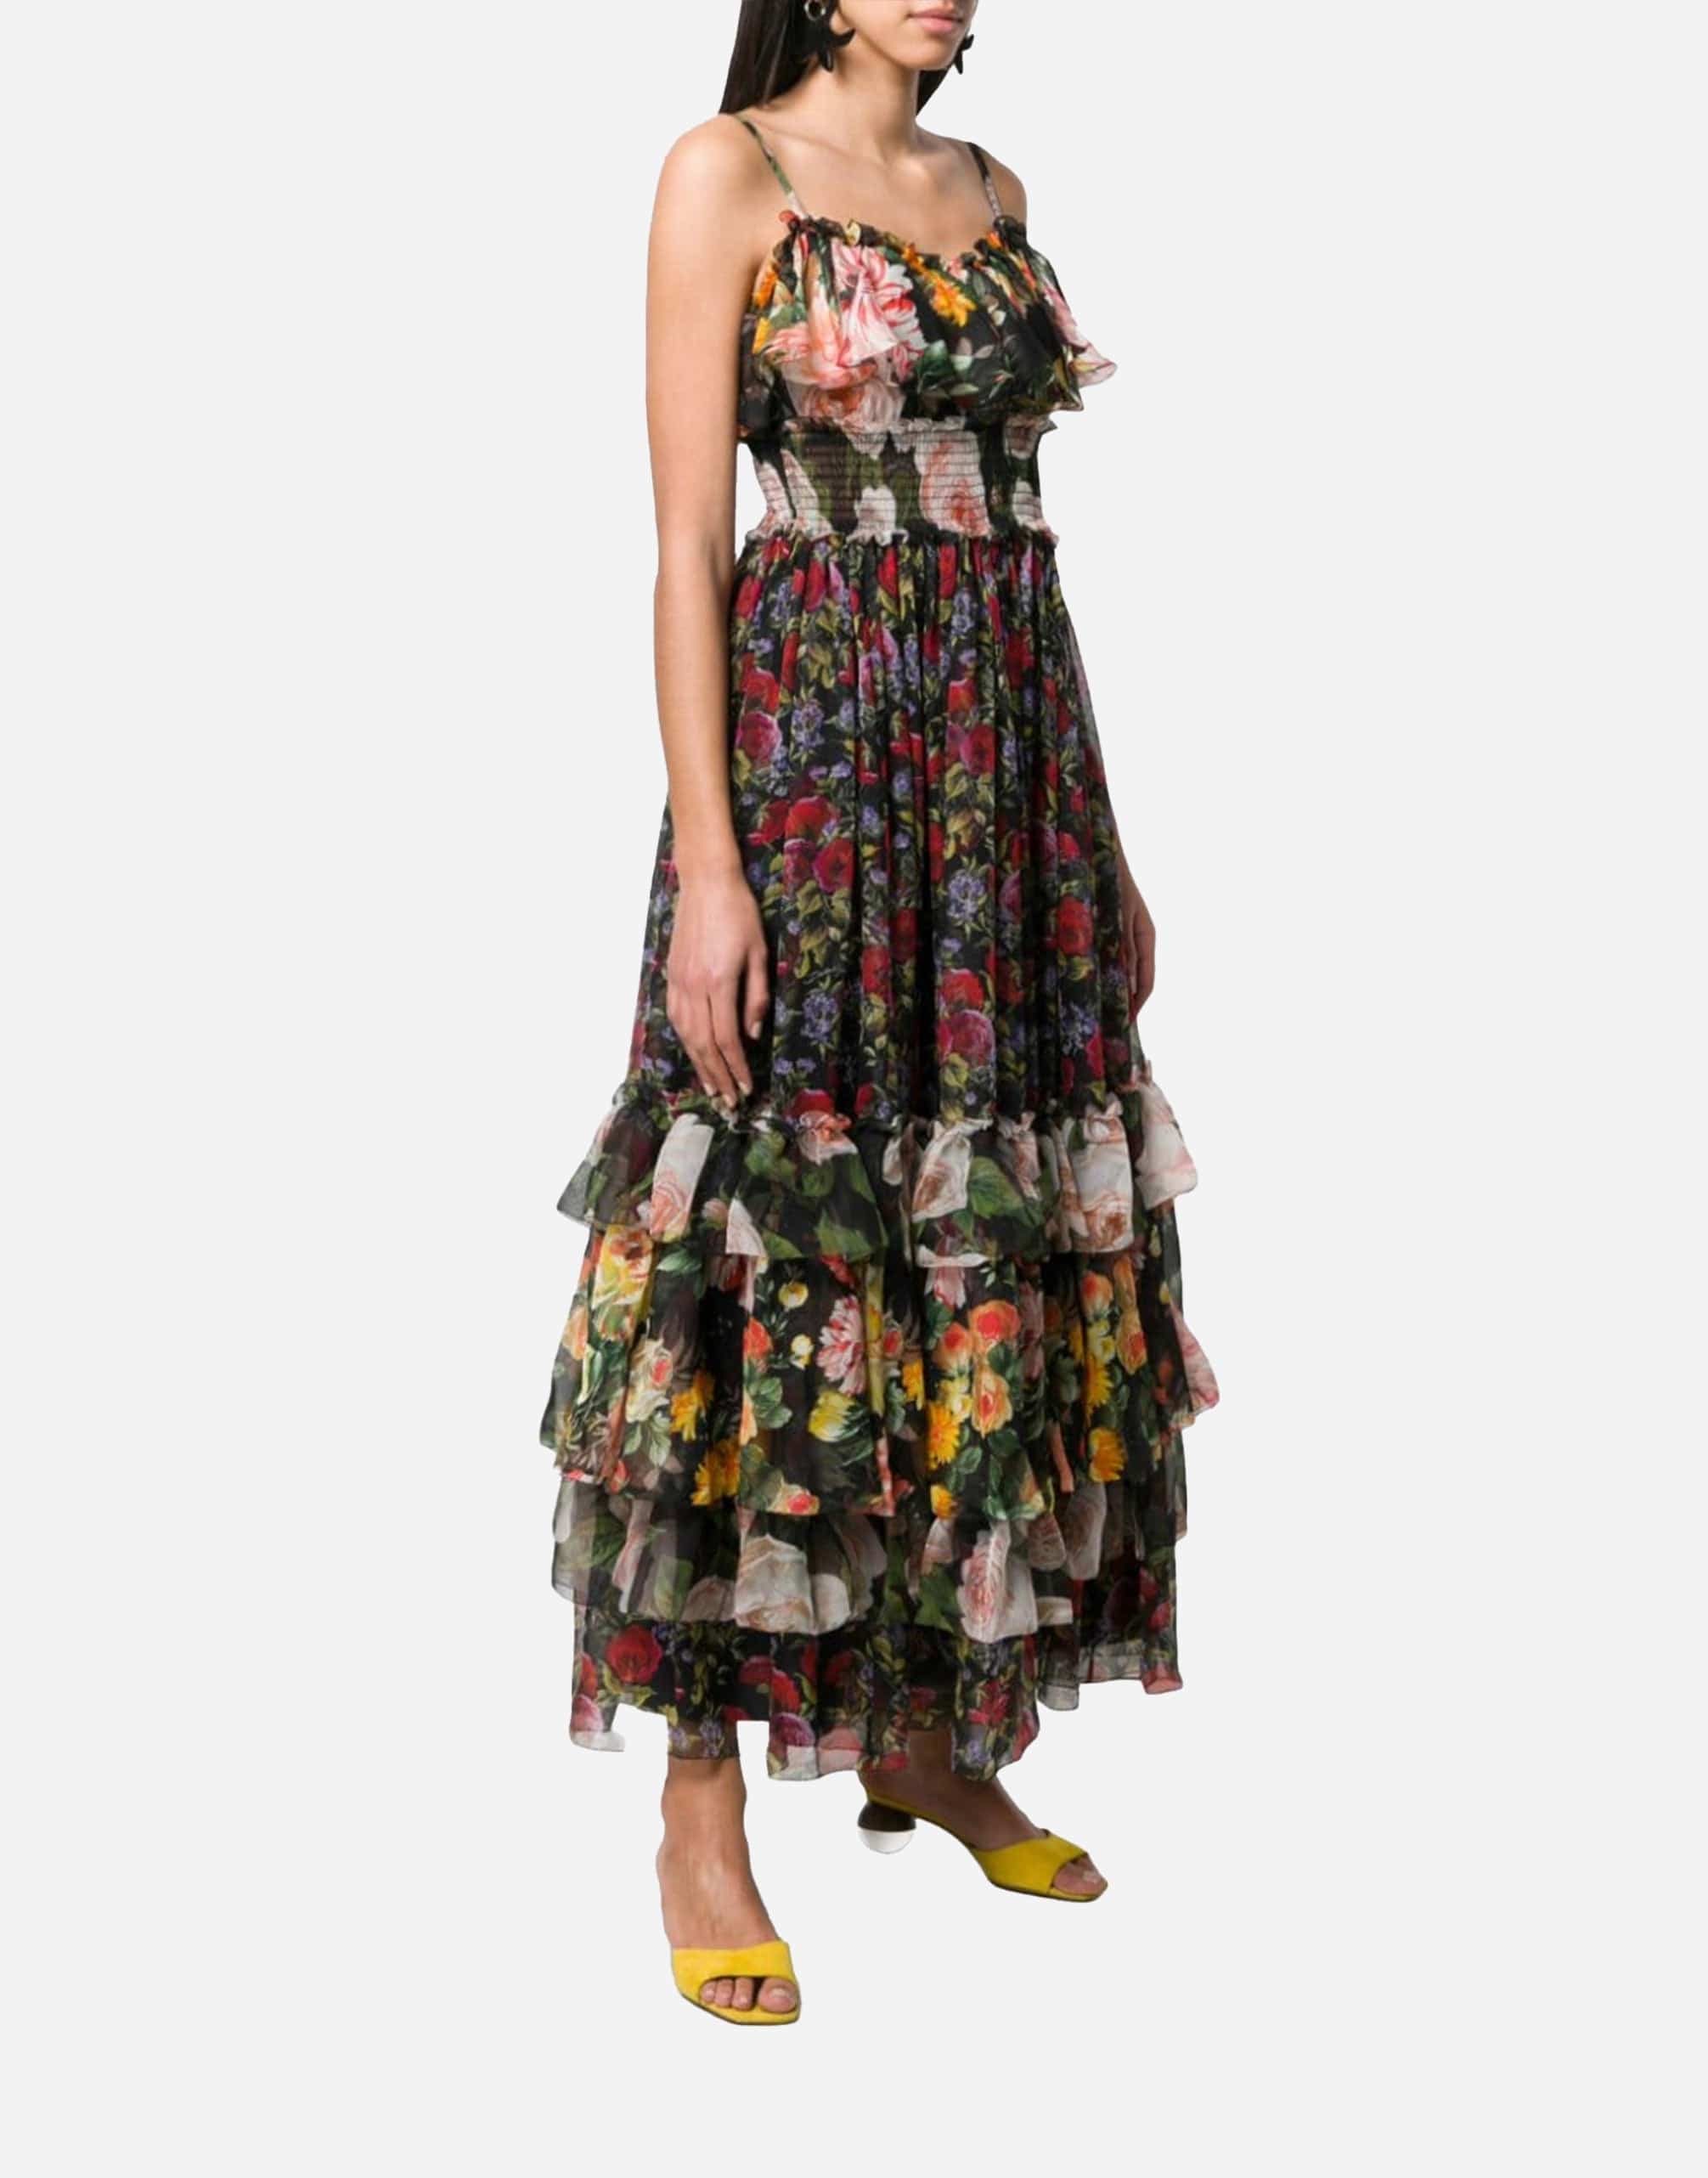 Floral Print Chiffon Layered Dress